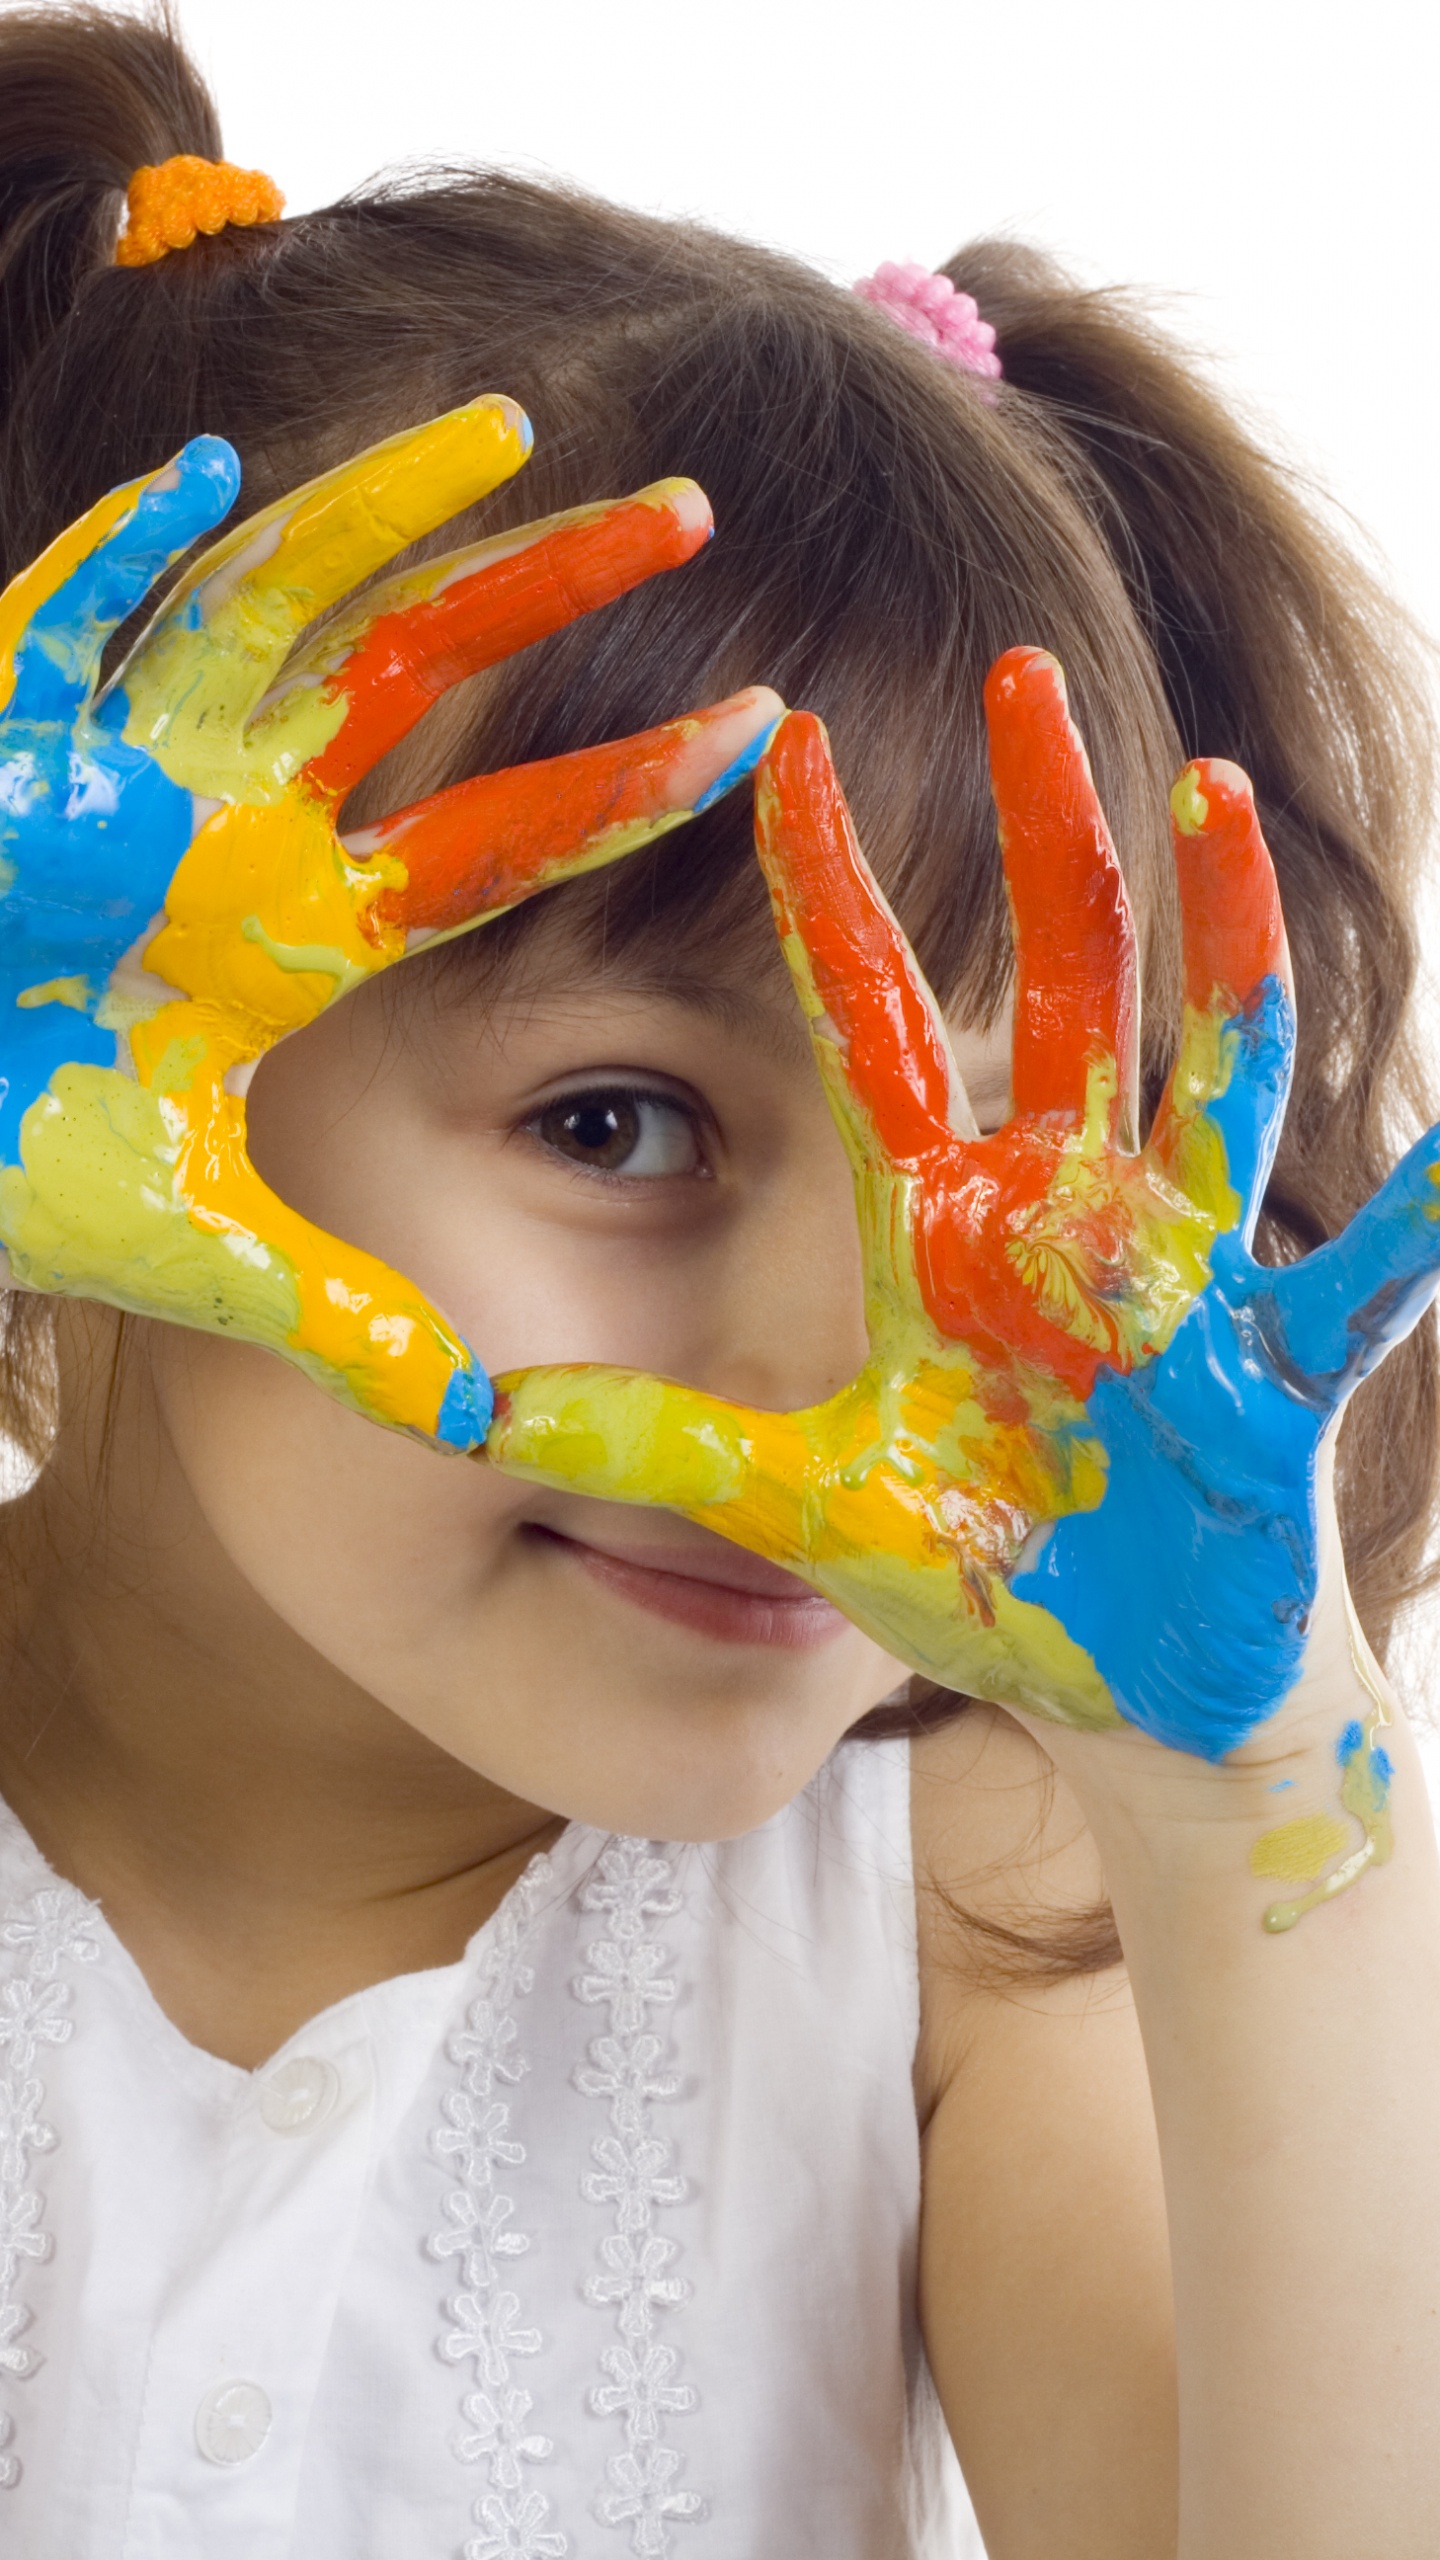 Farbe, Gesicht, Kopf, Kind, Ölmalerei. Wallpaper in 1440x2560 Resolution